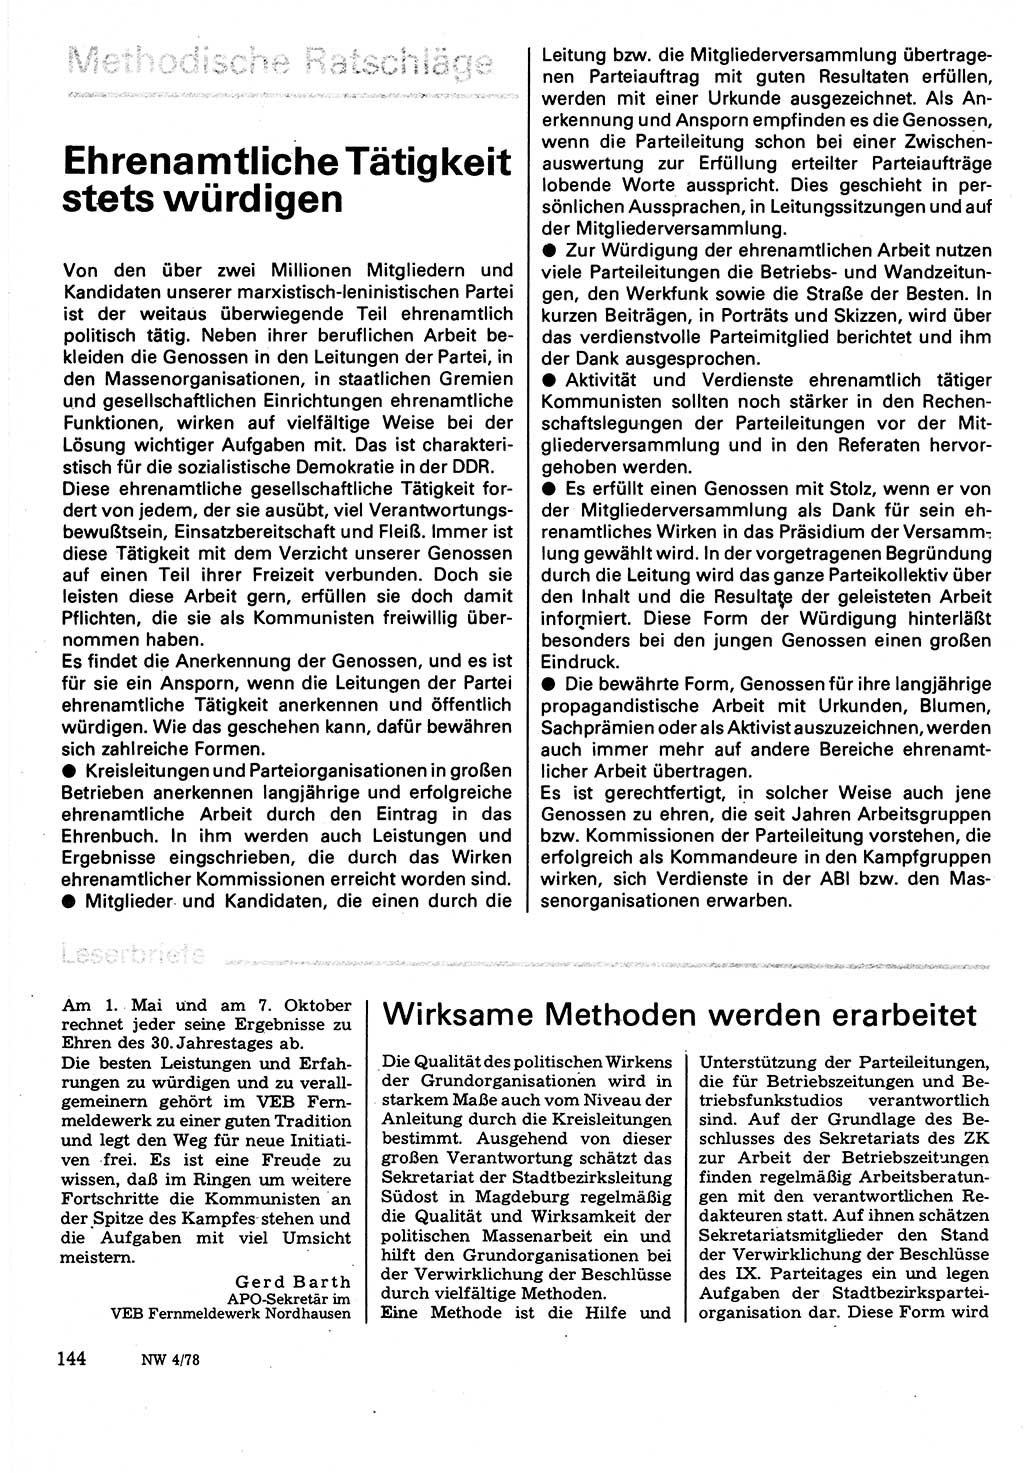 Neuer Weg (NW), Organ des Zentralkomitees (ZK) der SED (Sozialistische Einheitspartei Deutschlands) für Fragen des Parteilebens, 33. Jahrgang [Deutsche Demokratische Republik (DDR)] 1978, Seite 144 (NW ZK SED DDR 1978, S. 144)